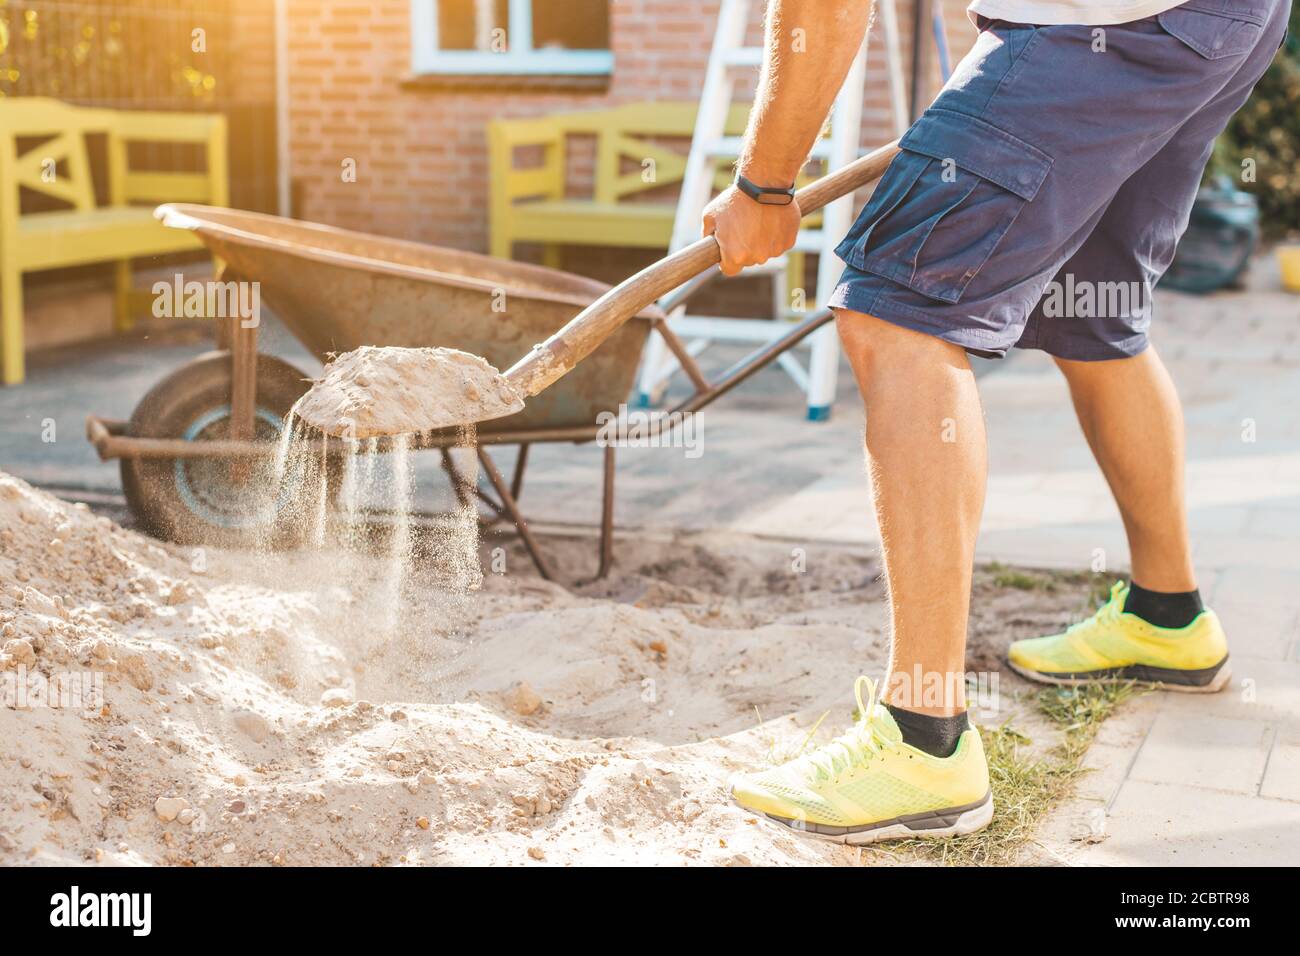 Imagen recortada del hombre cavando arena con una pala - DIY hágalo usted mismo y el concepto de las obras caseras Foto de stock